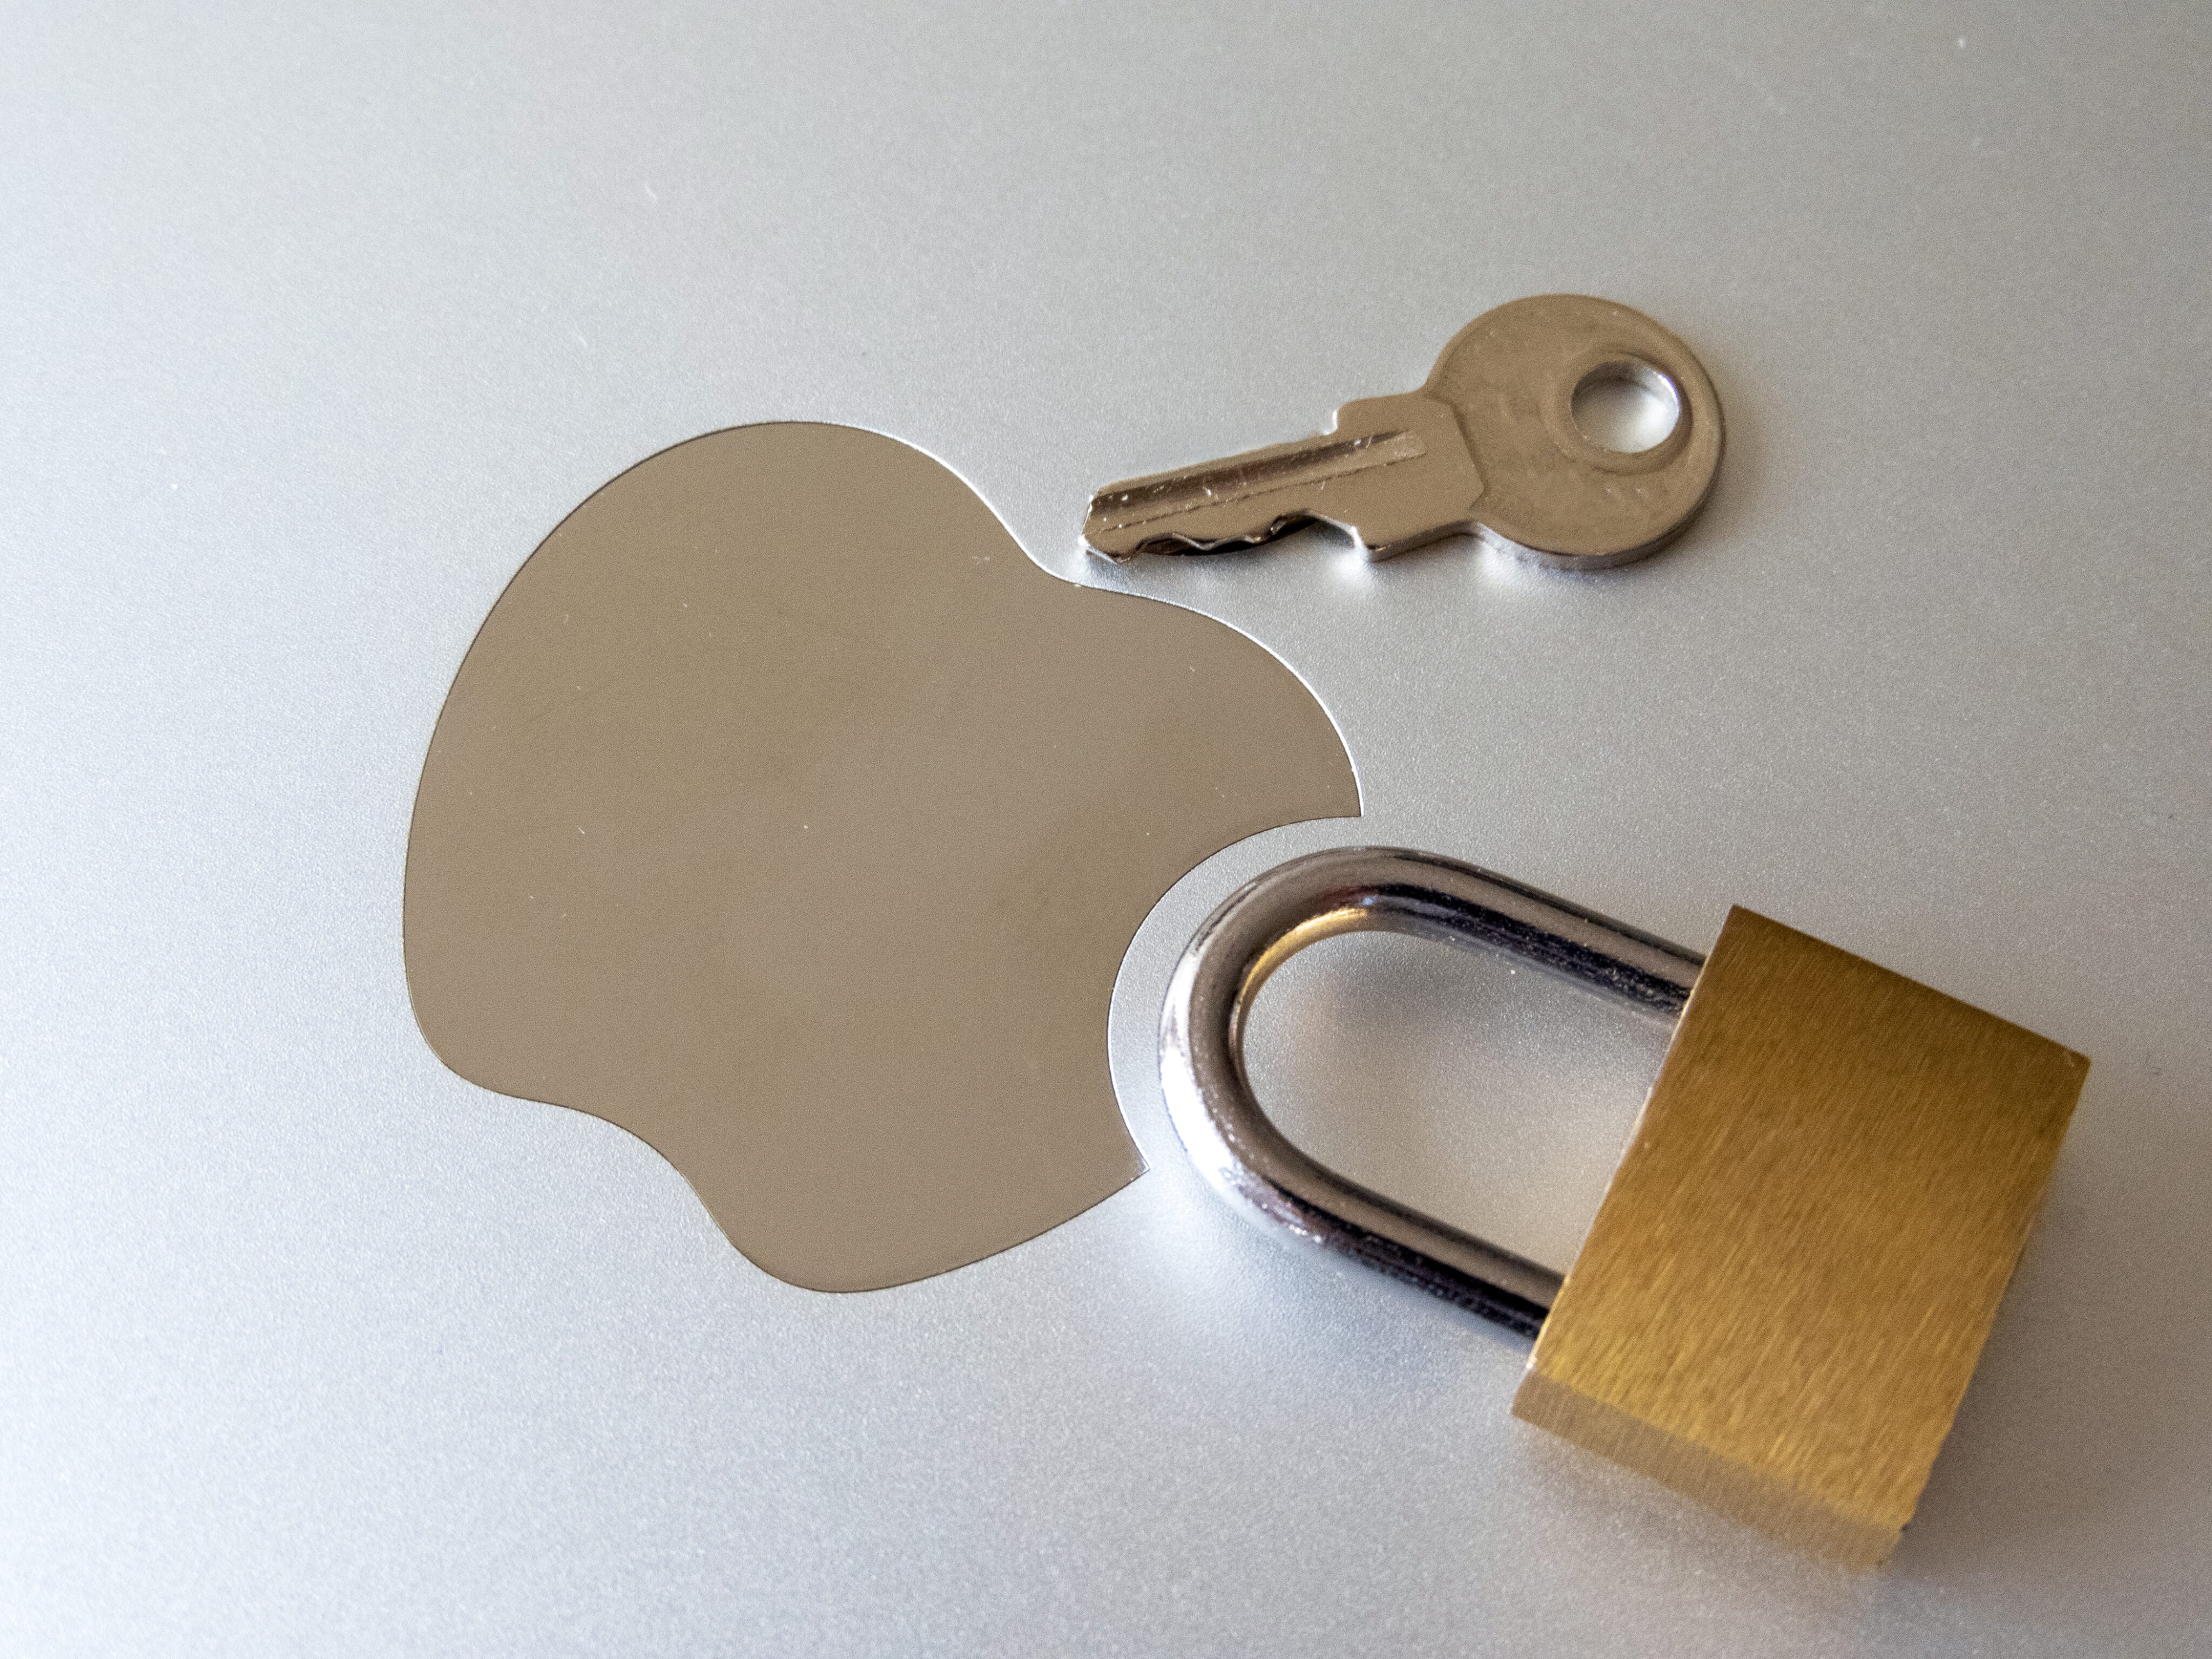 Logo da Apple (maçã) e cadeado com chave